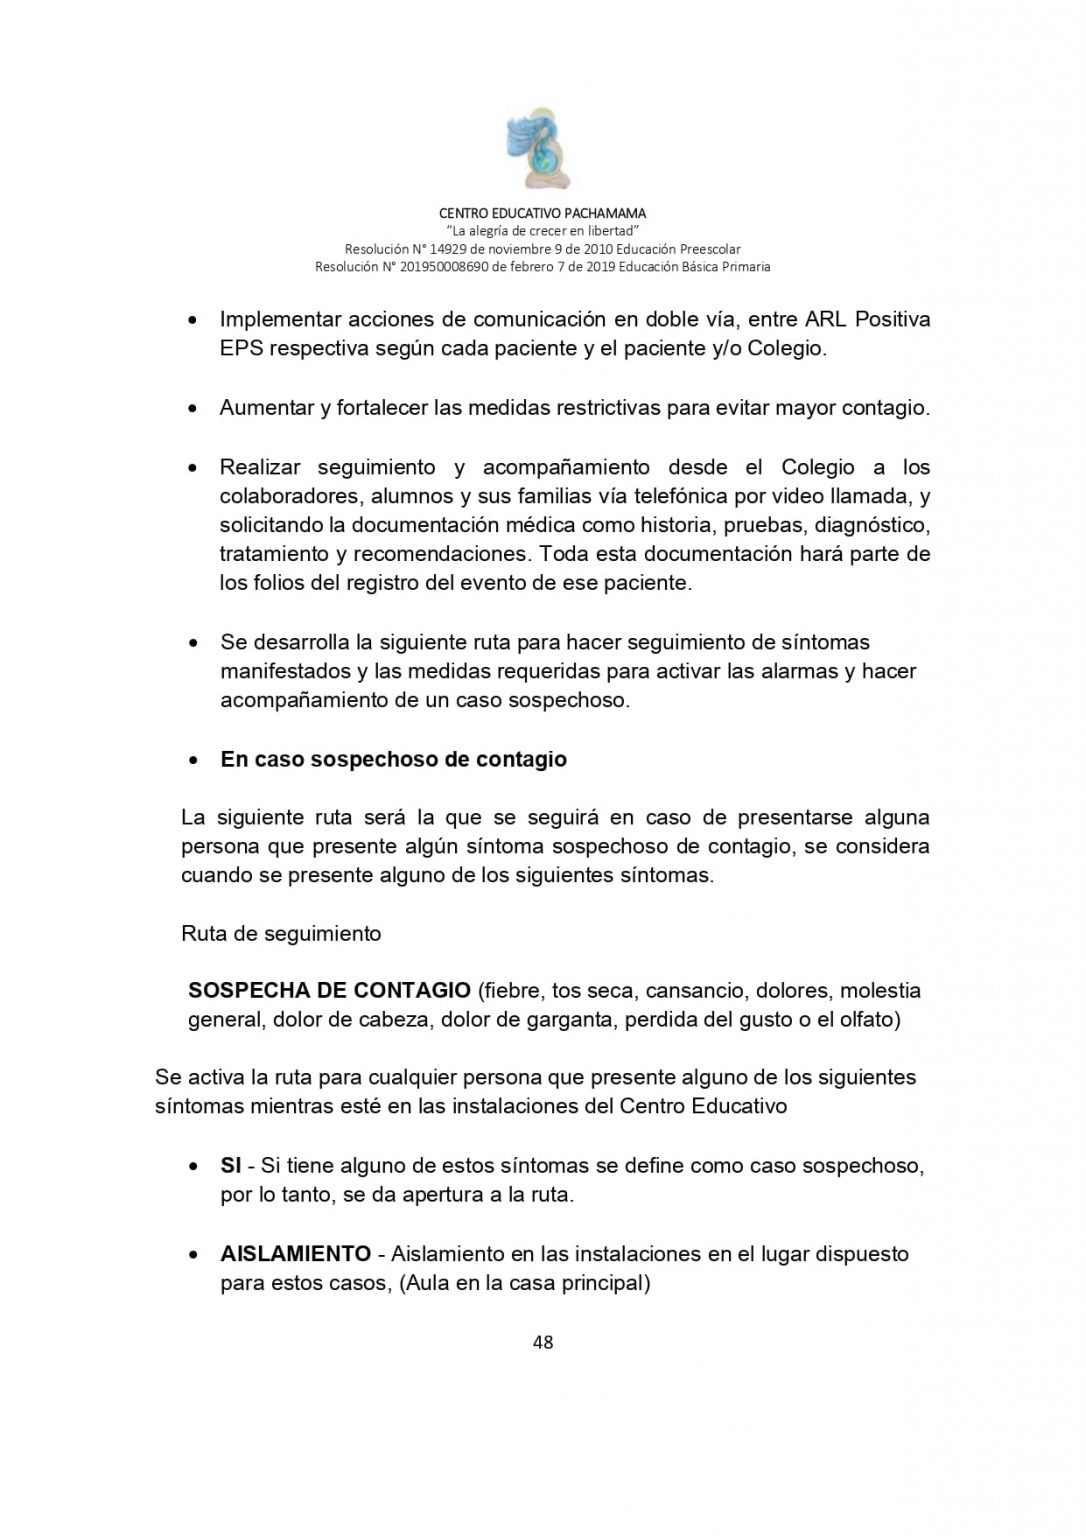 PROTOCOLO DE BIOSEGURIDAD PACHAMAMA Última Versión (3)-convertido_page-0048